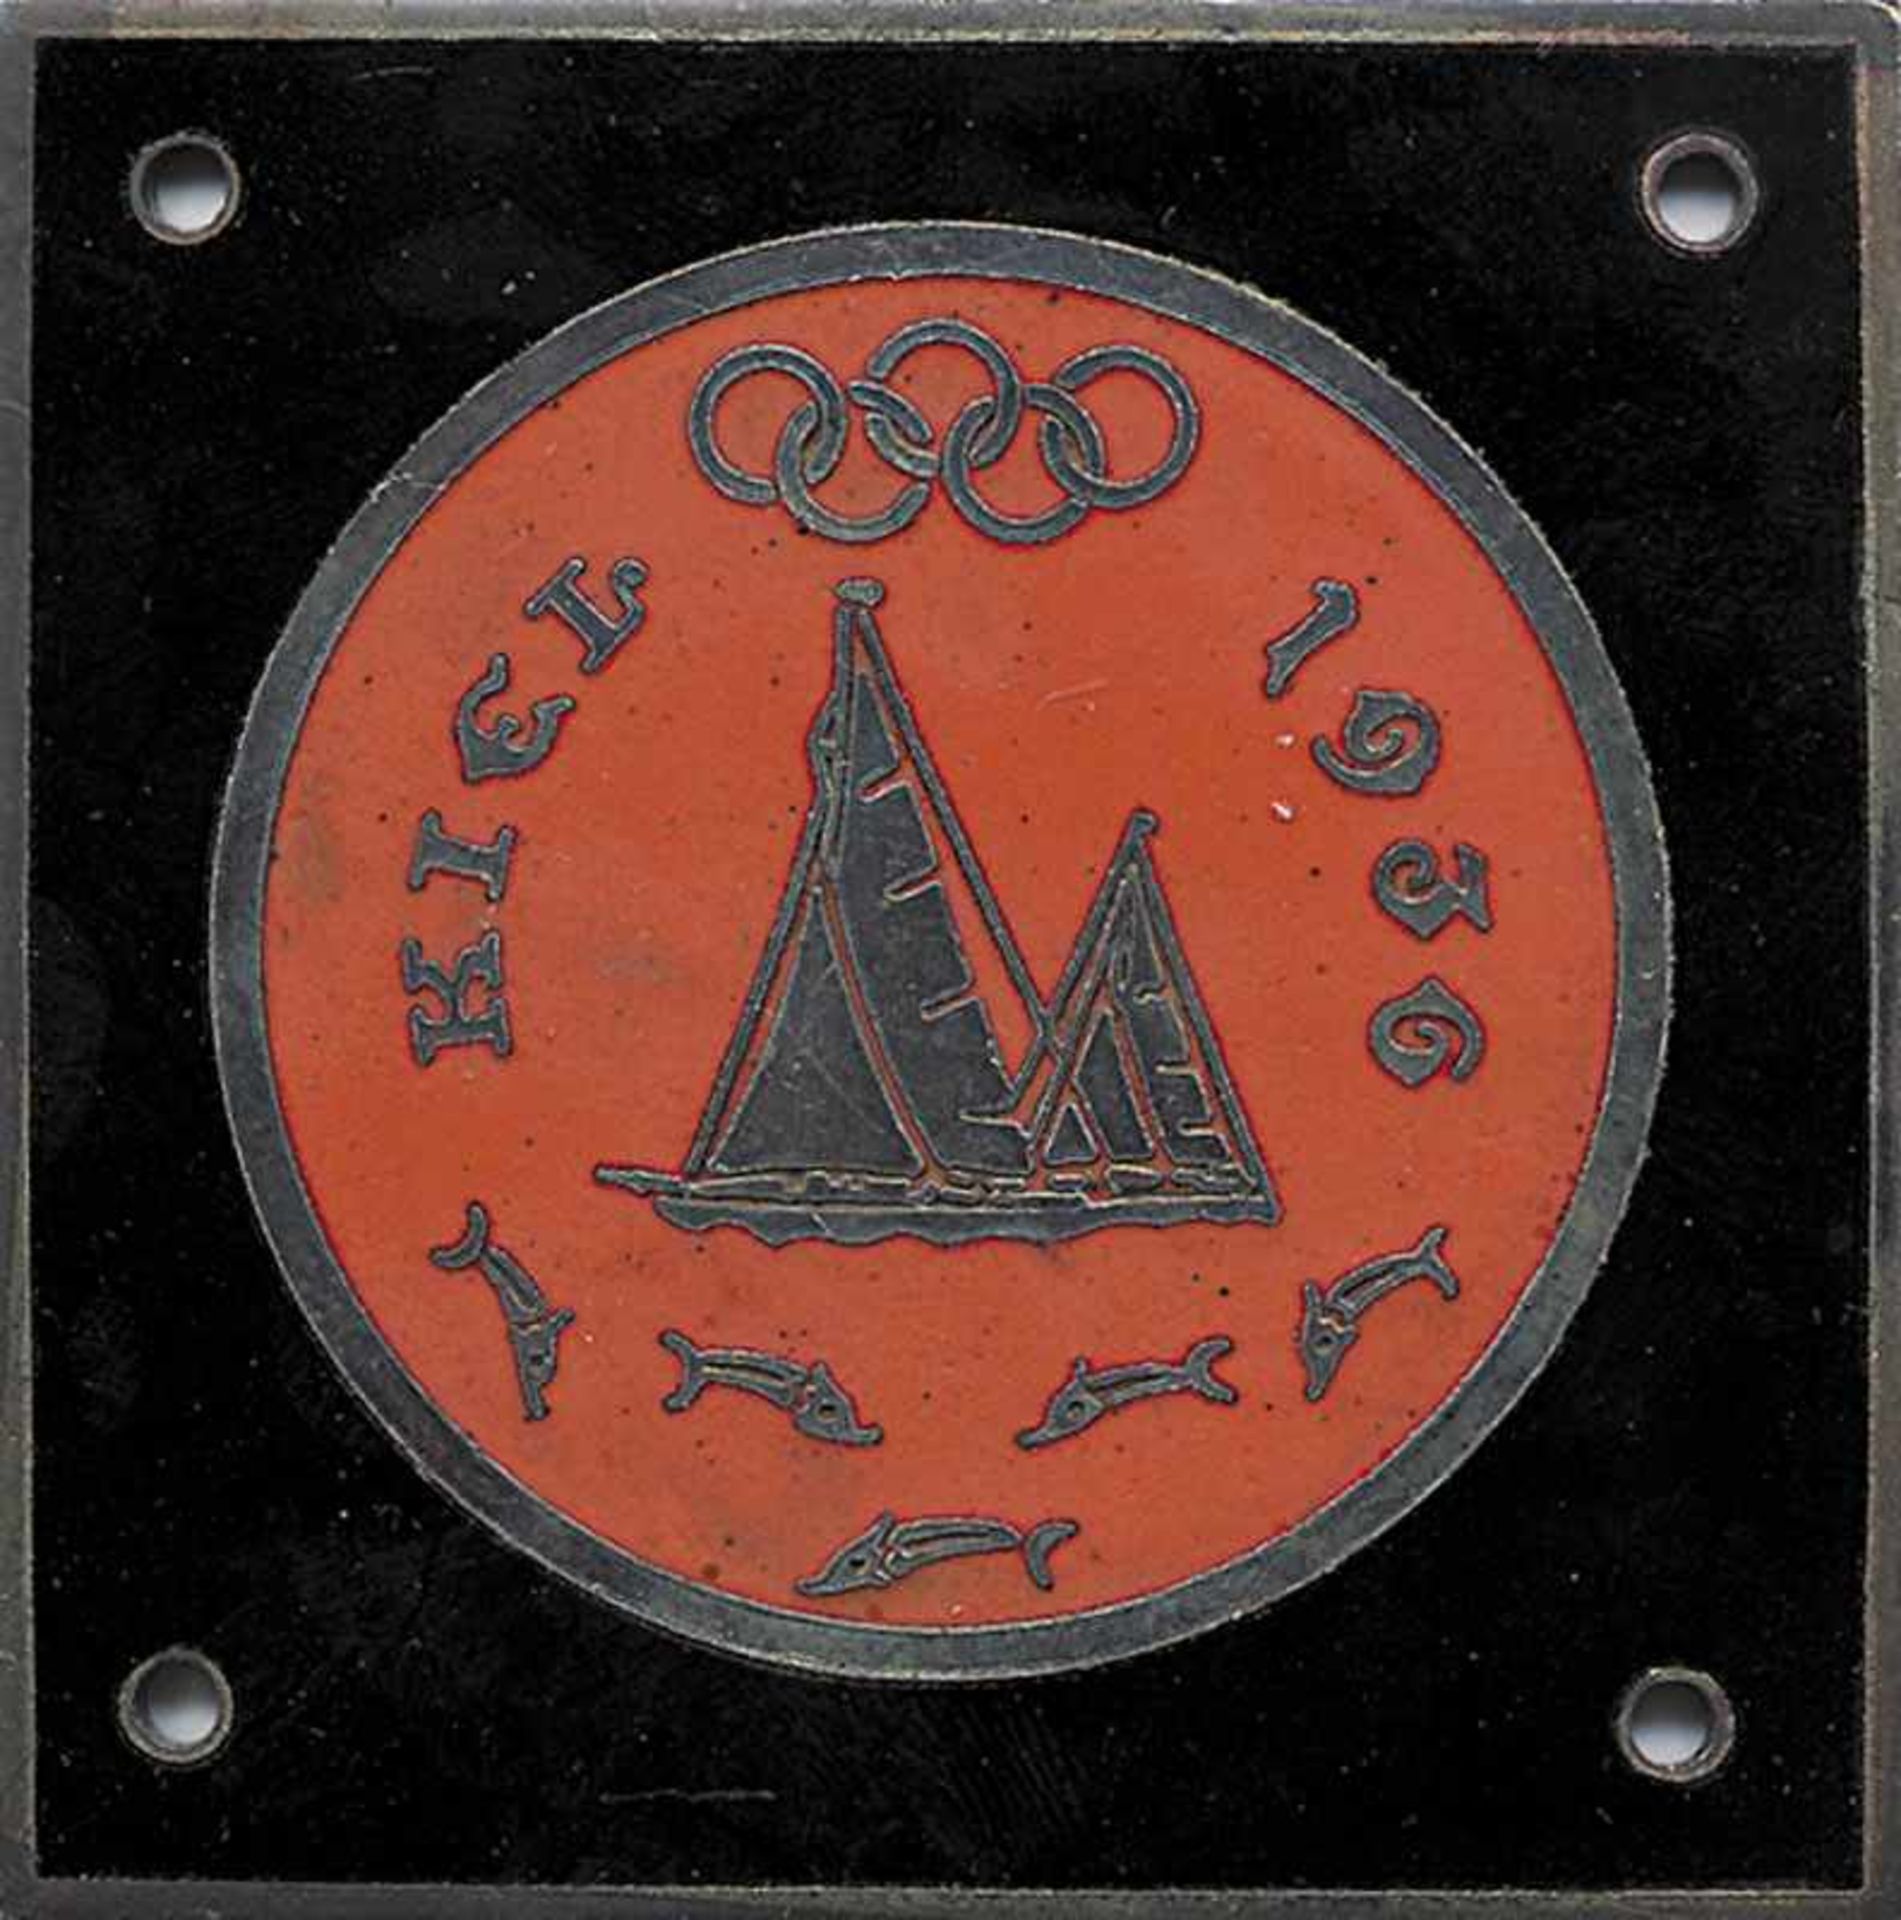 Olympic Games 1936. Car plaque Kiel Sailing compe - Big car plaque Kiel 1936 Olympic Sailing